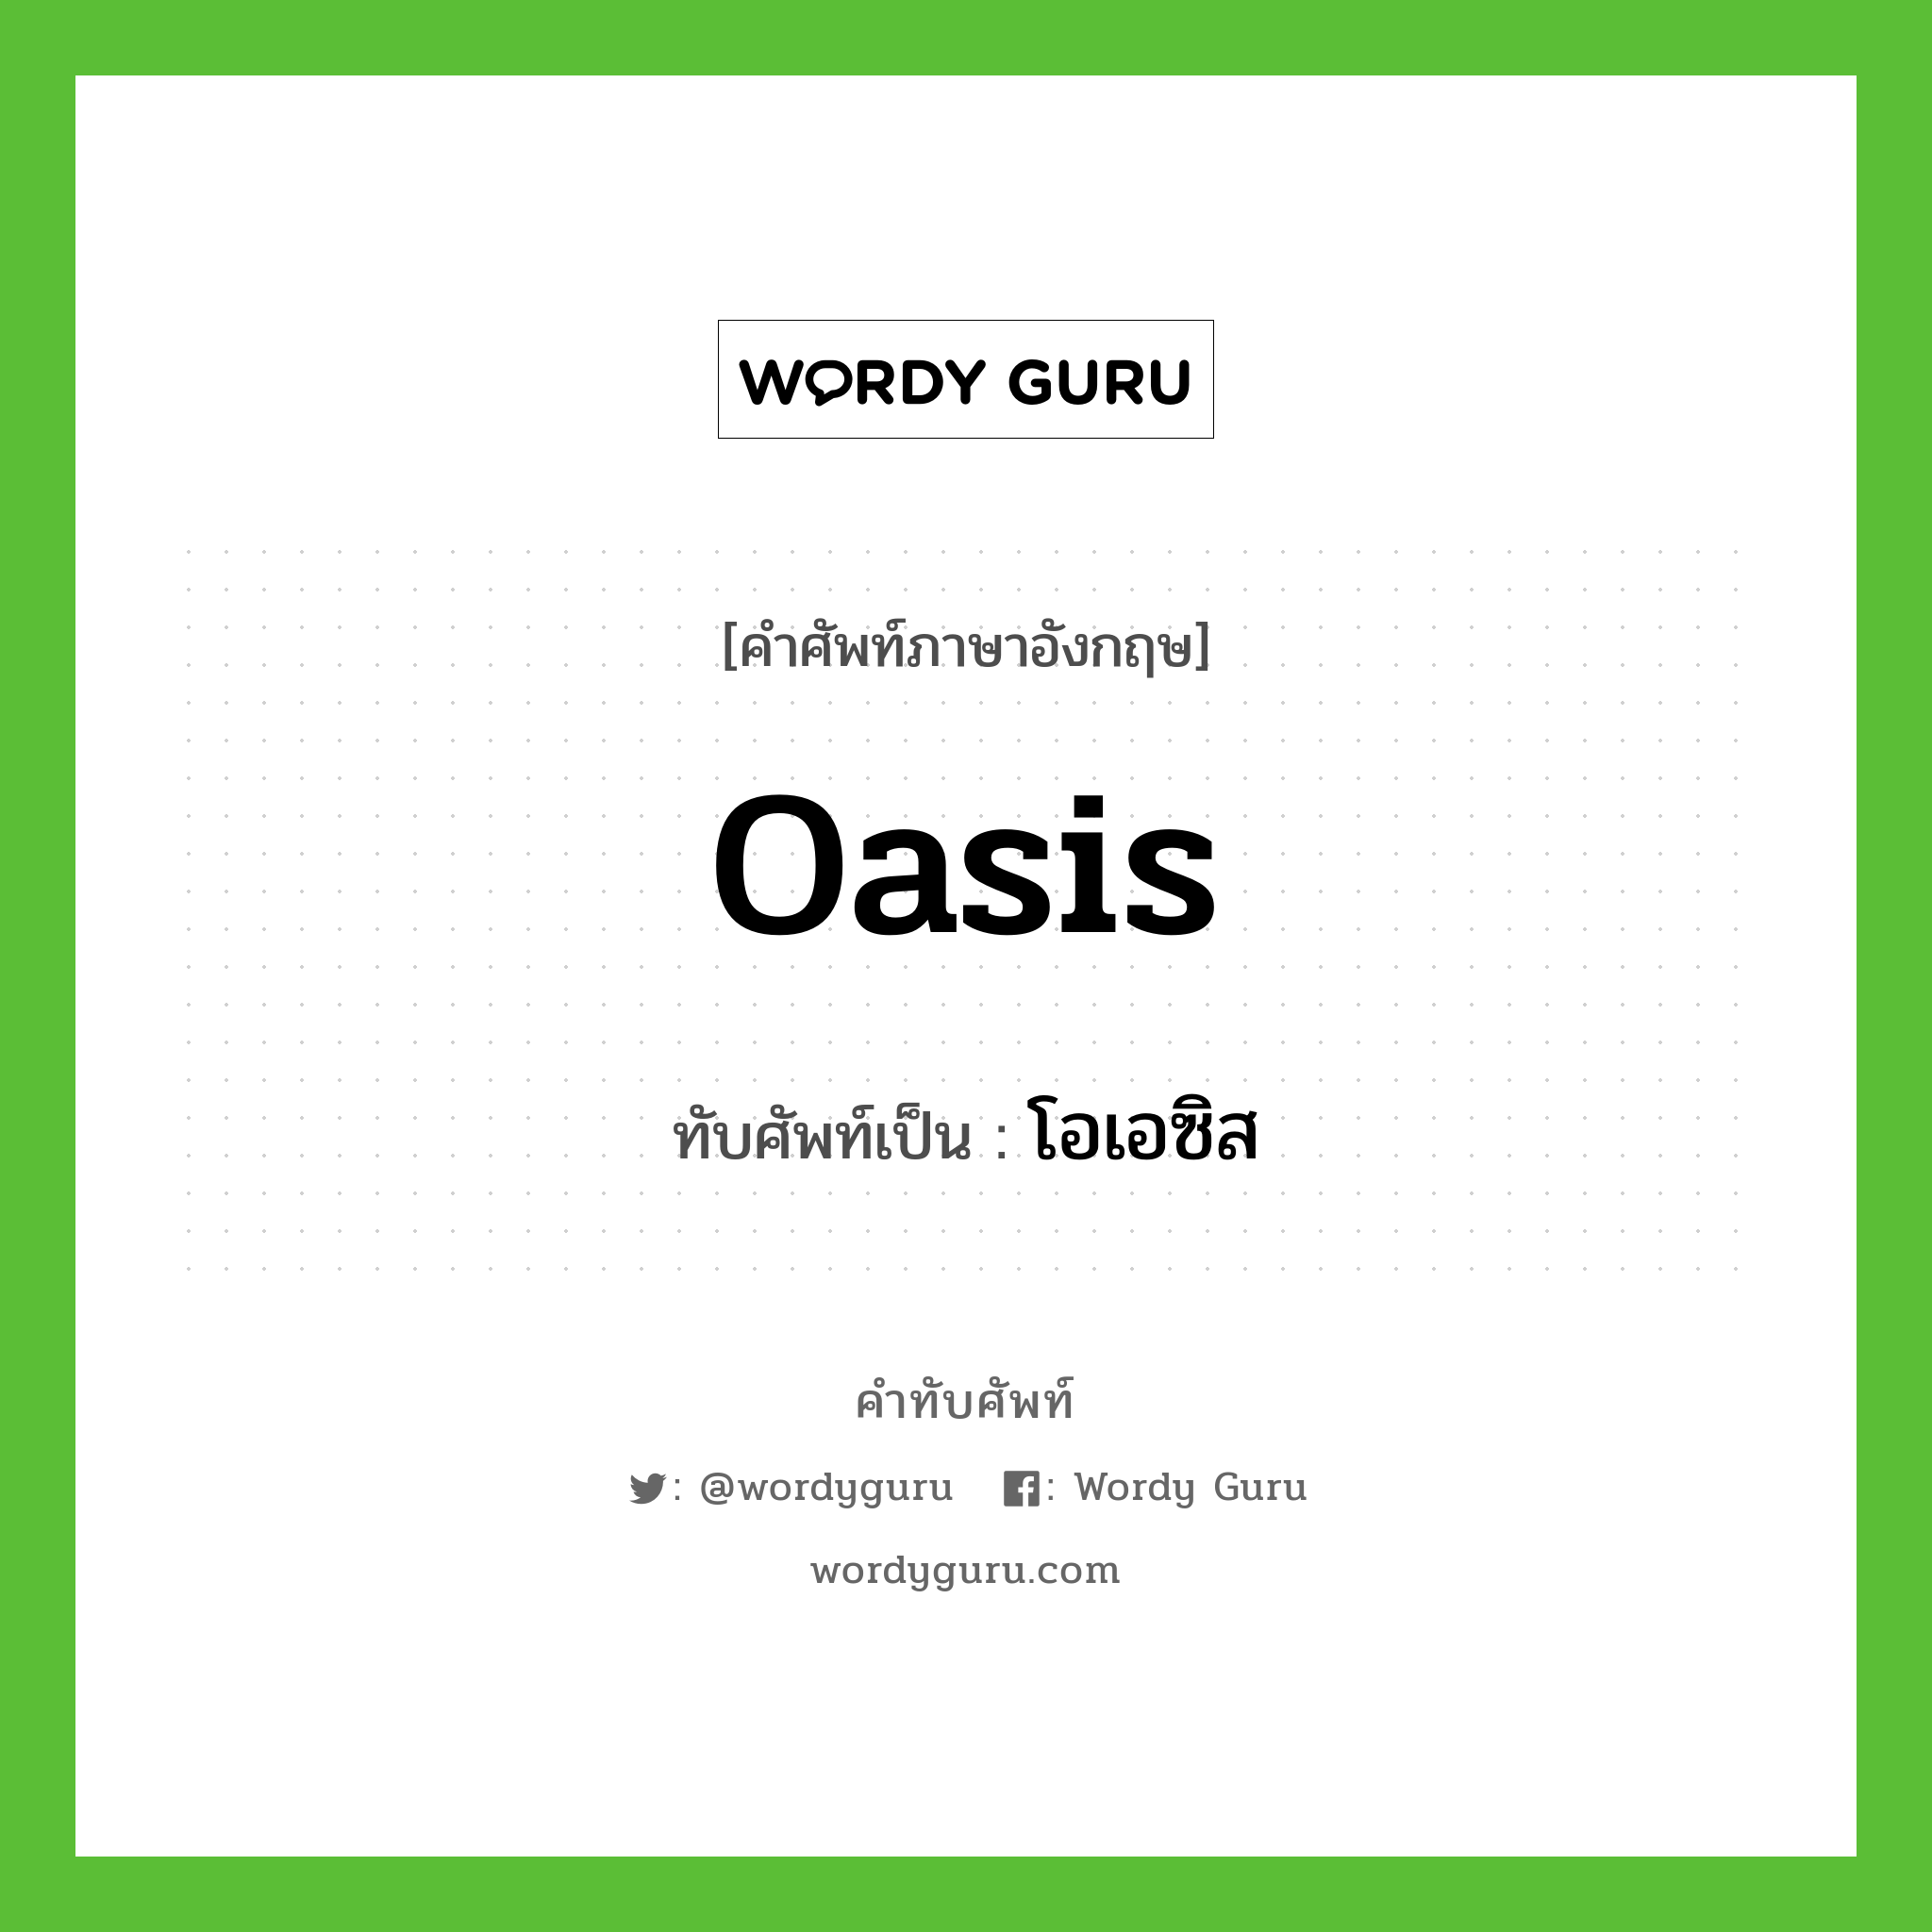 oasis เขียนเป็นคำไทยว่าอะไร?, คำศัพท์ภาษาอังกฤษ oasis ทับศัพท์เป็น โอเอซิส